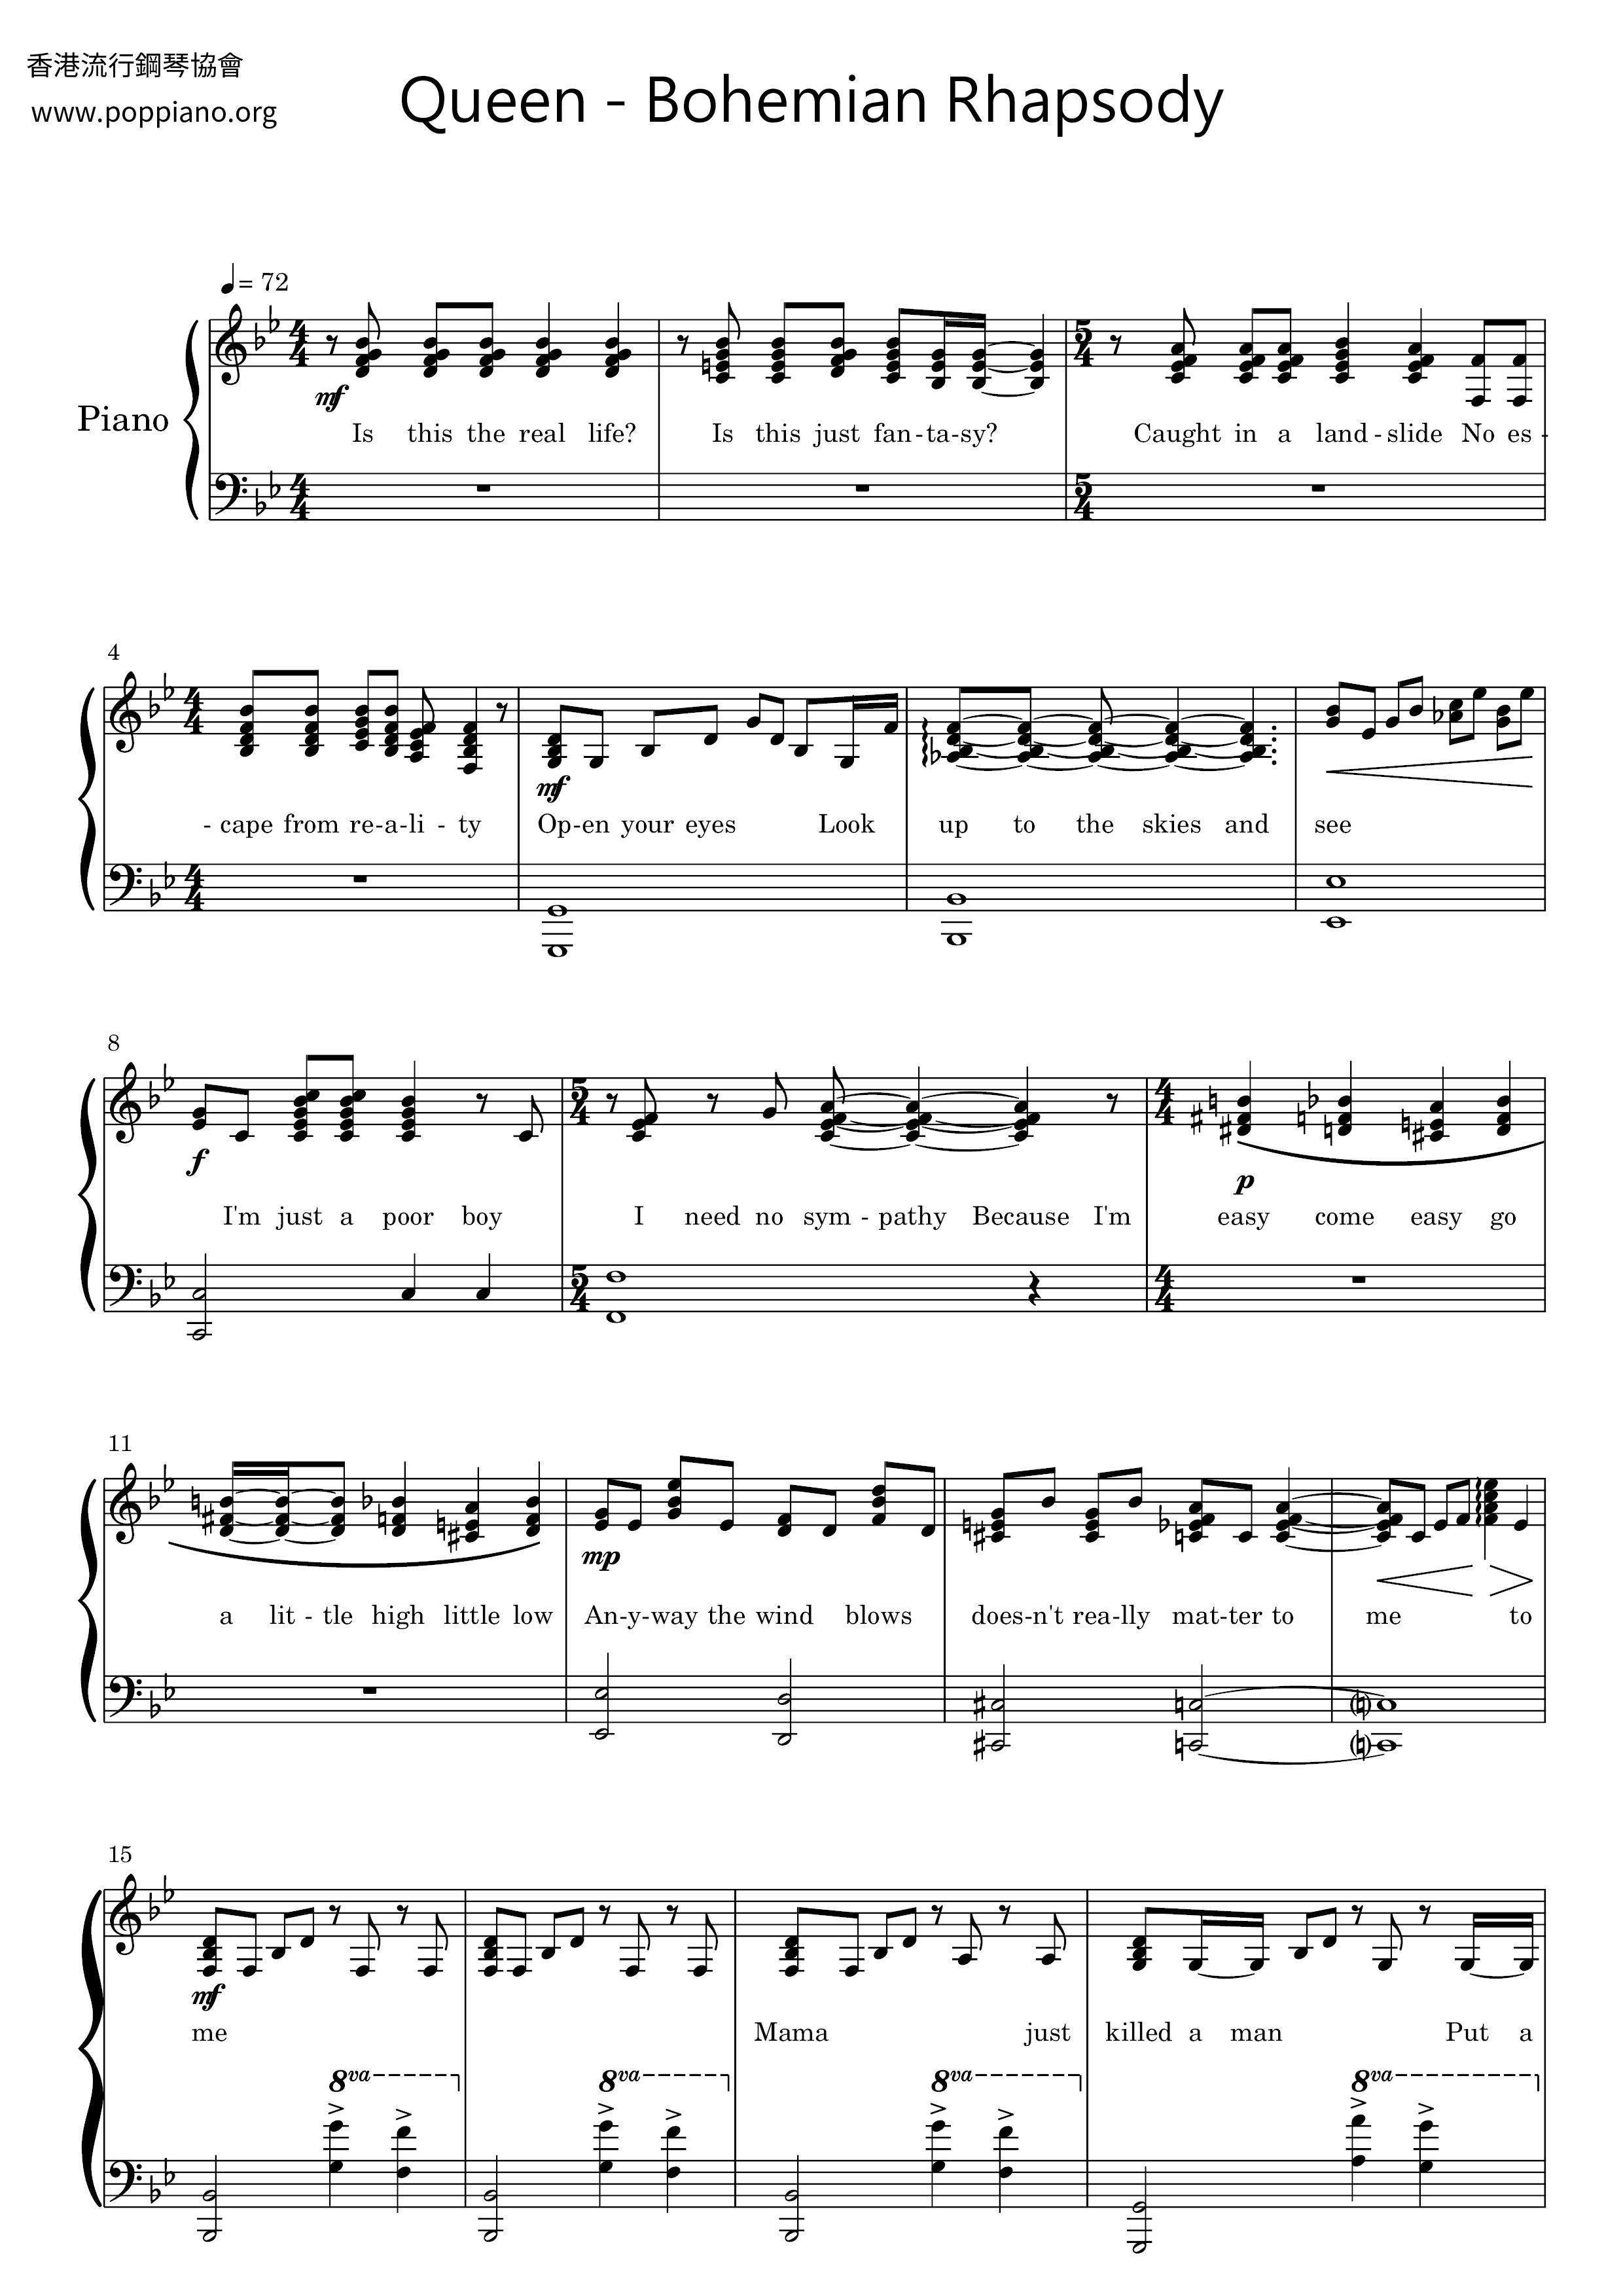 Bohemian Rhapsody Score